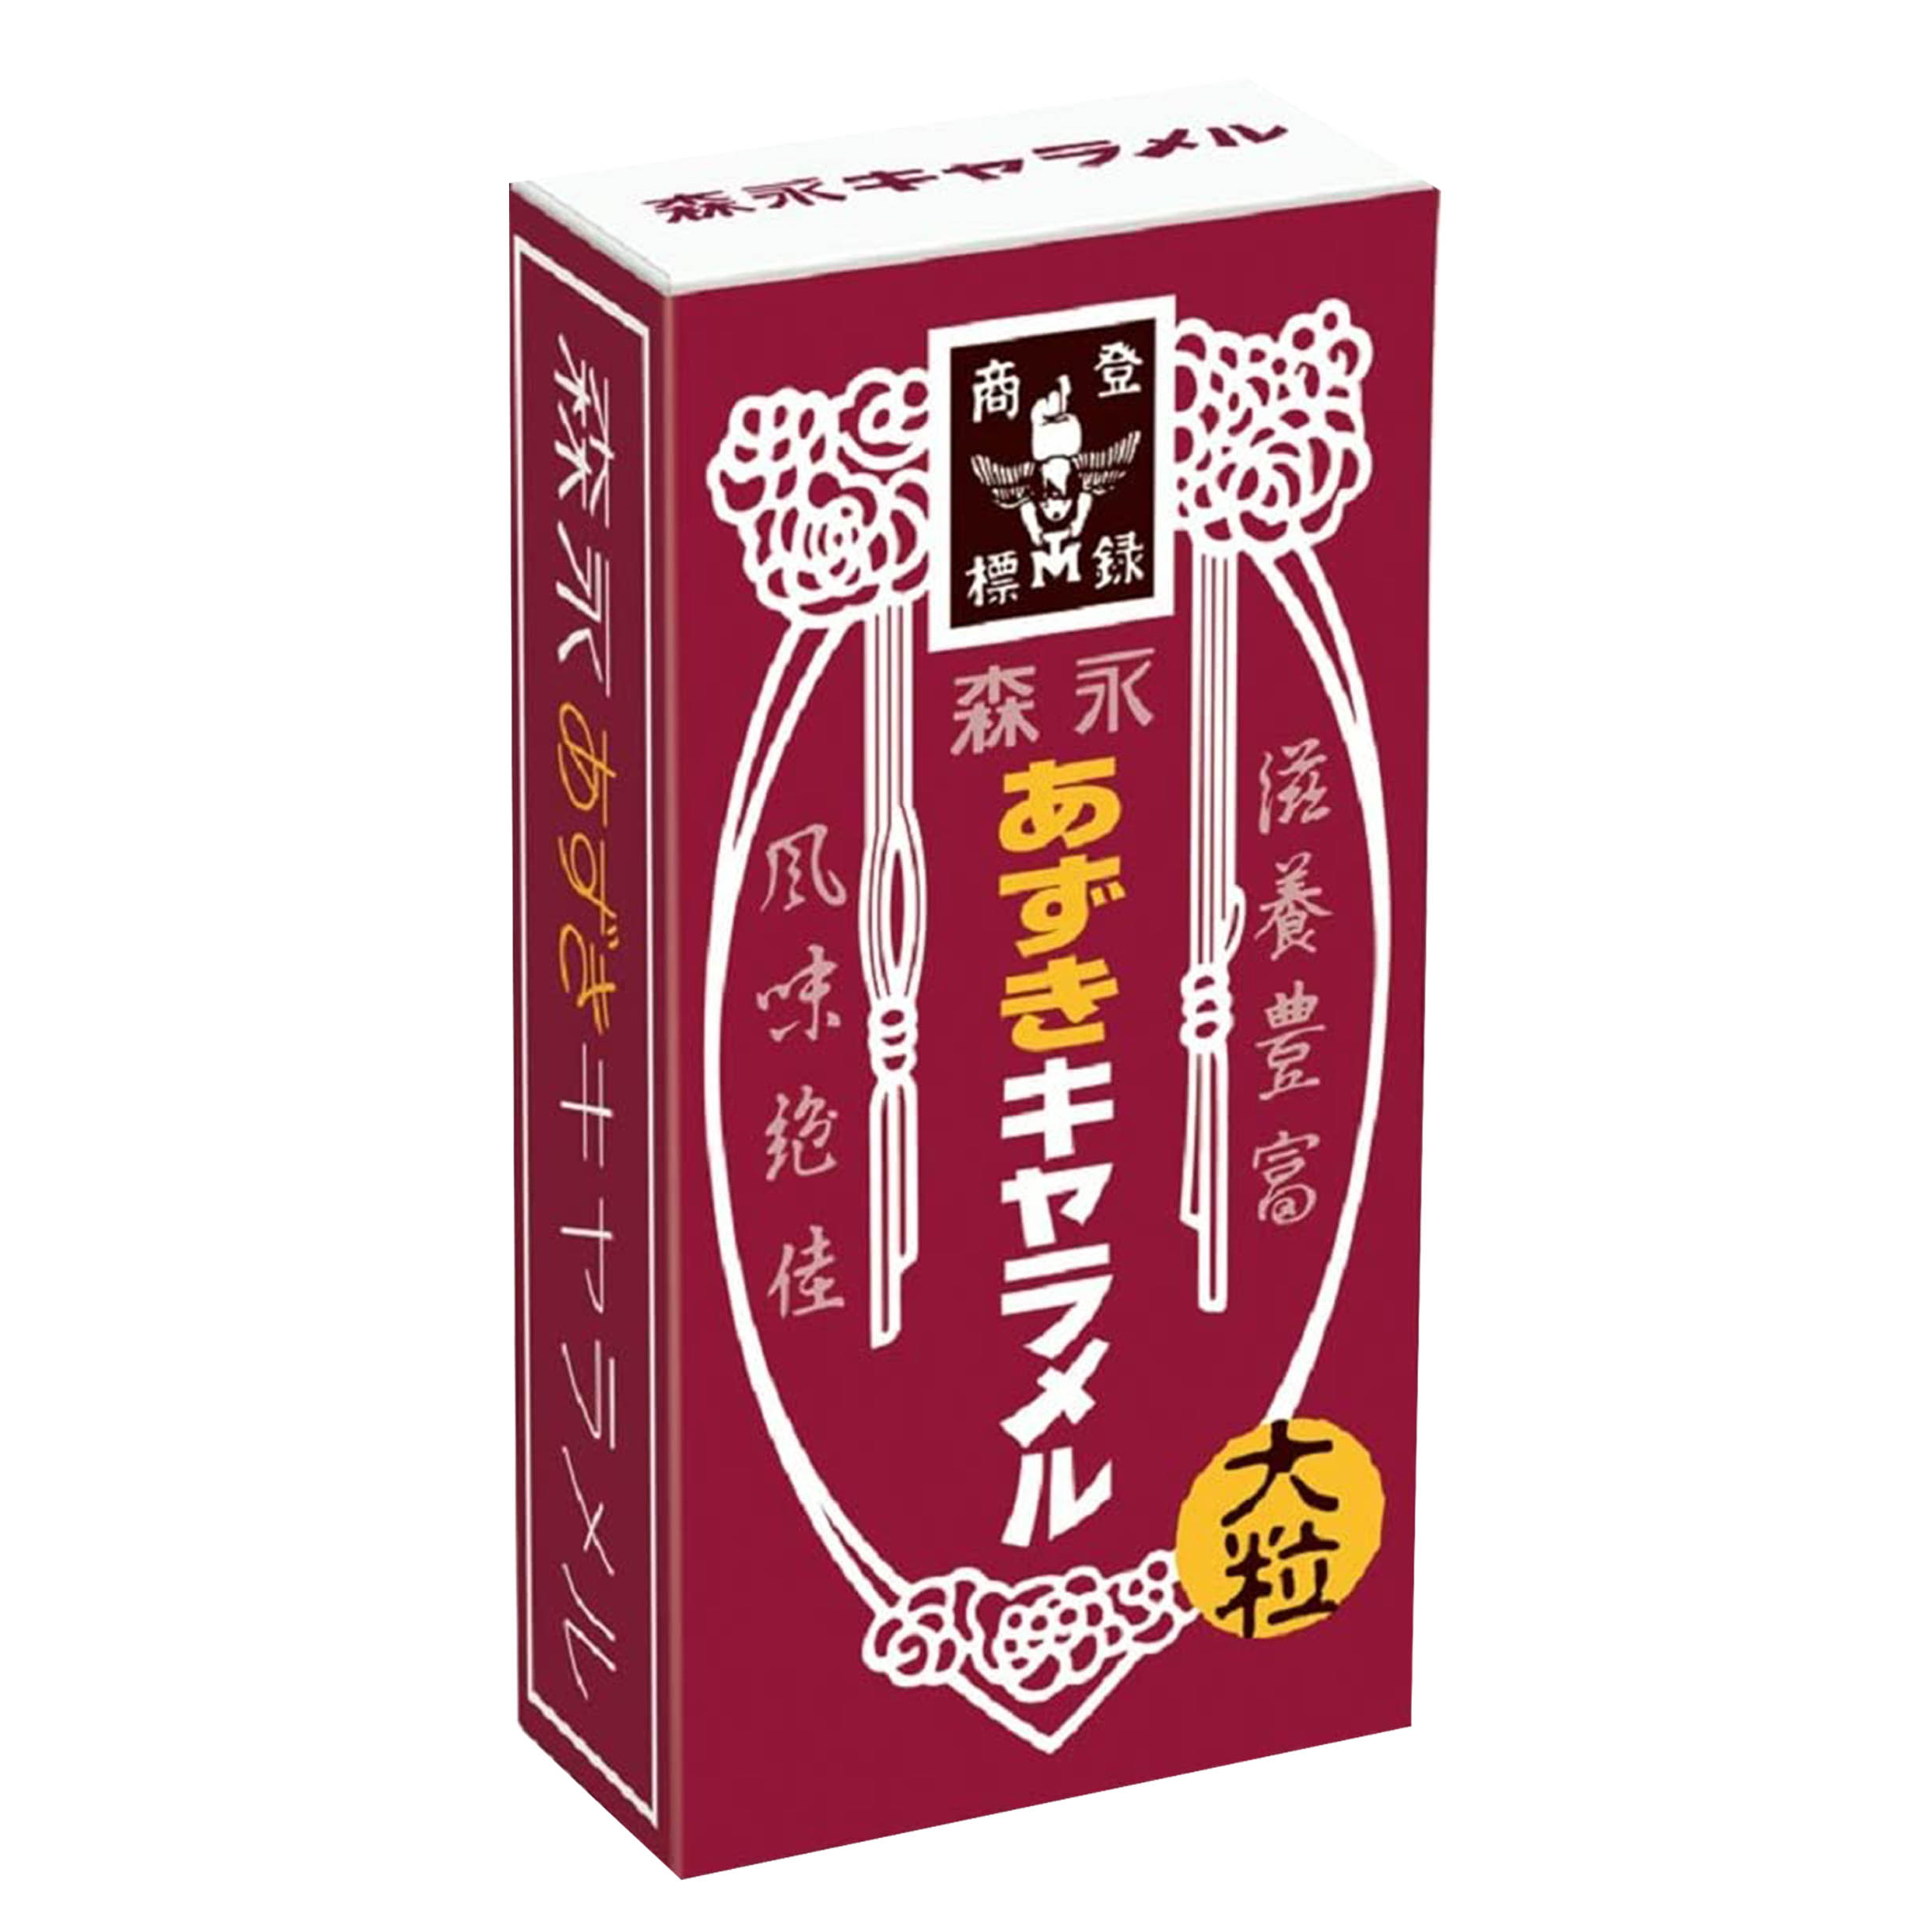 紅豆牛奶糖 149g 18枚-日本進口製造